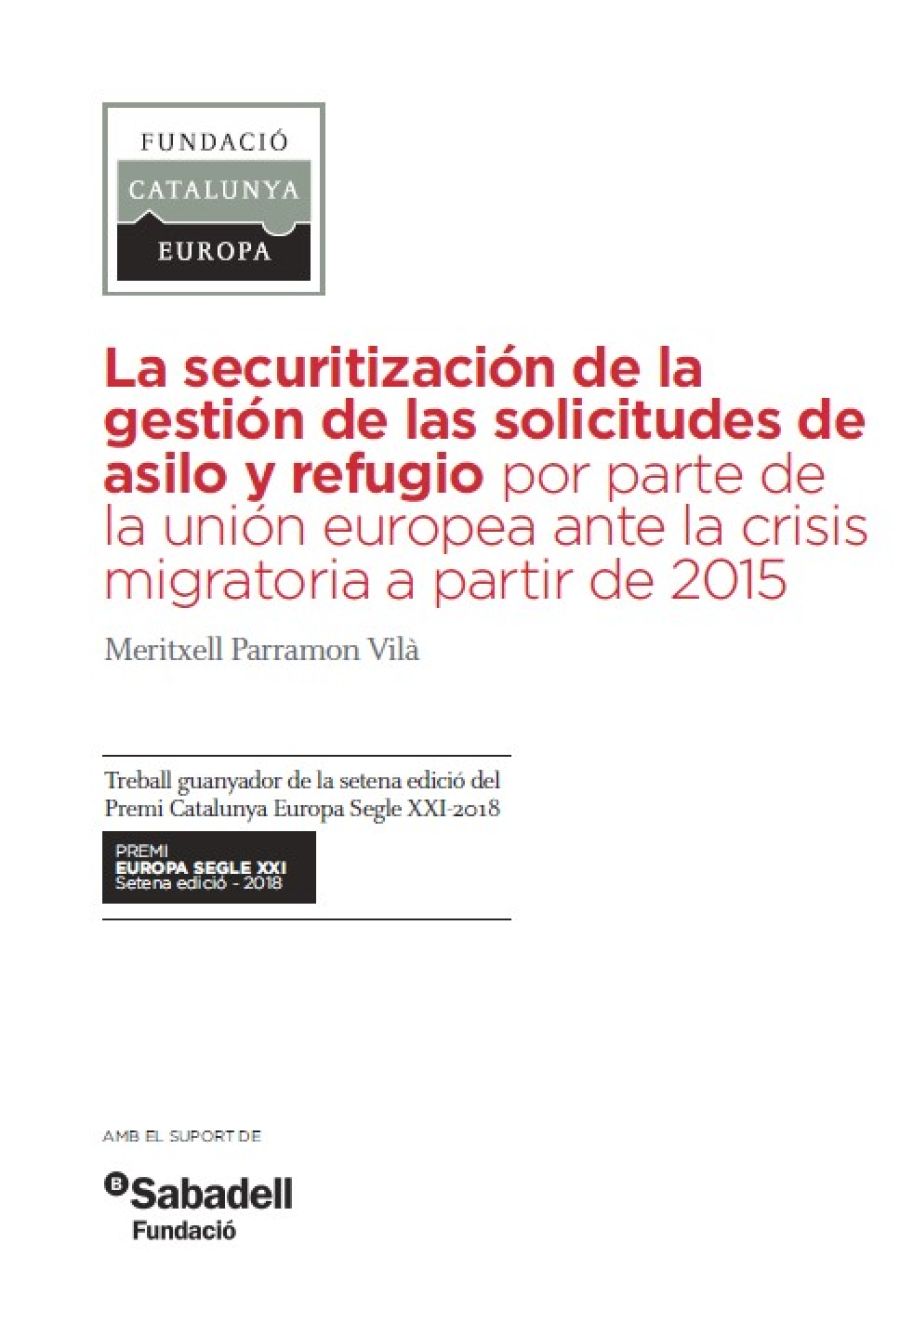 La securitización de la gestión de las solicitudes de asilo y refugio por parte de la UE ante la crisis a partir de 2015